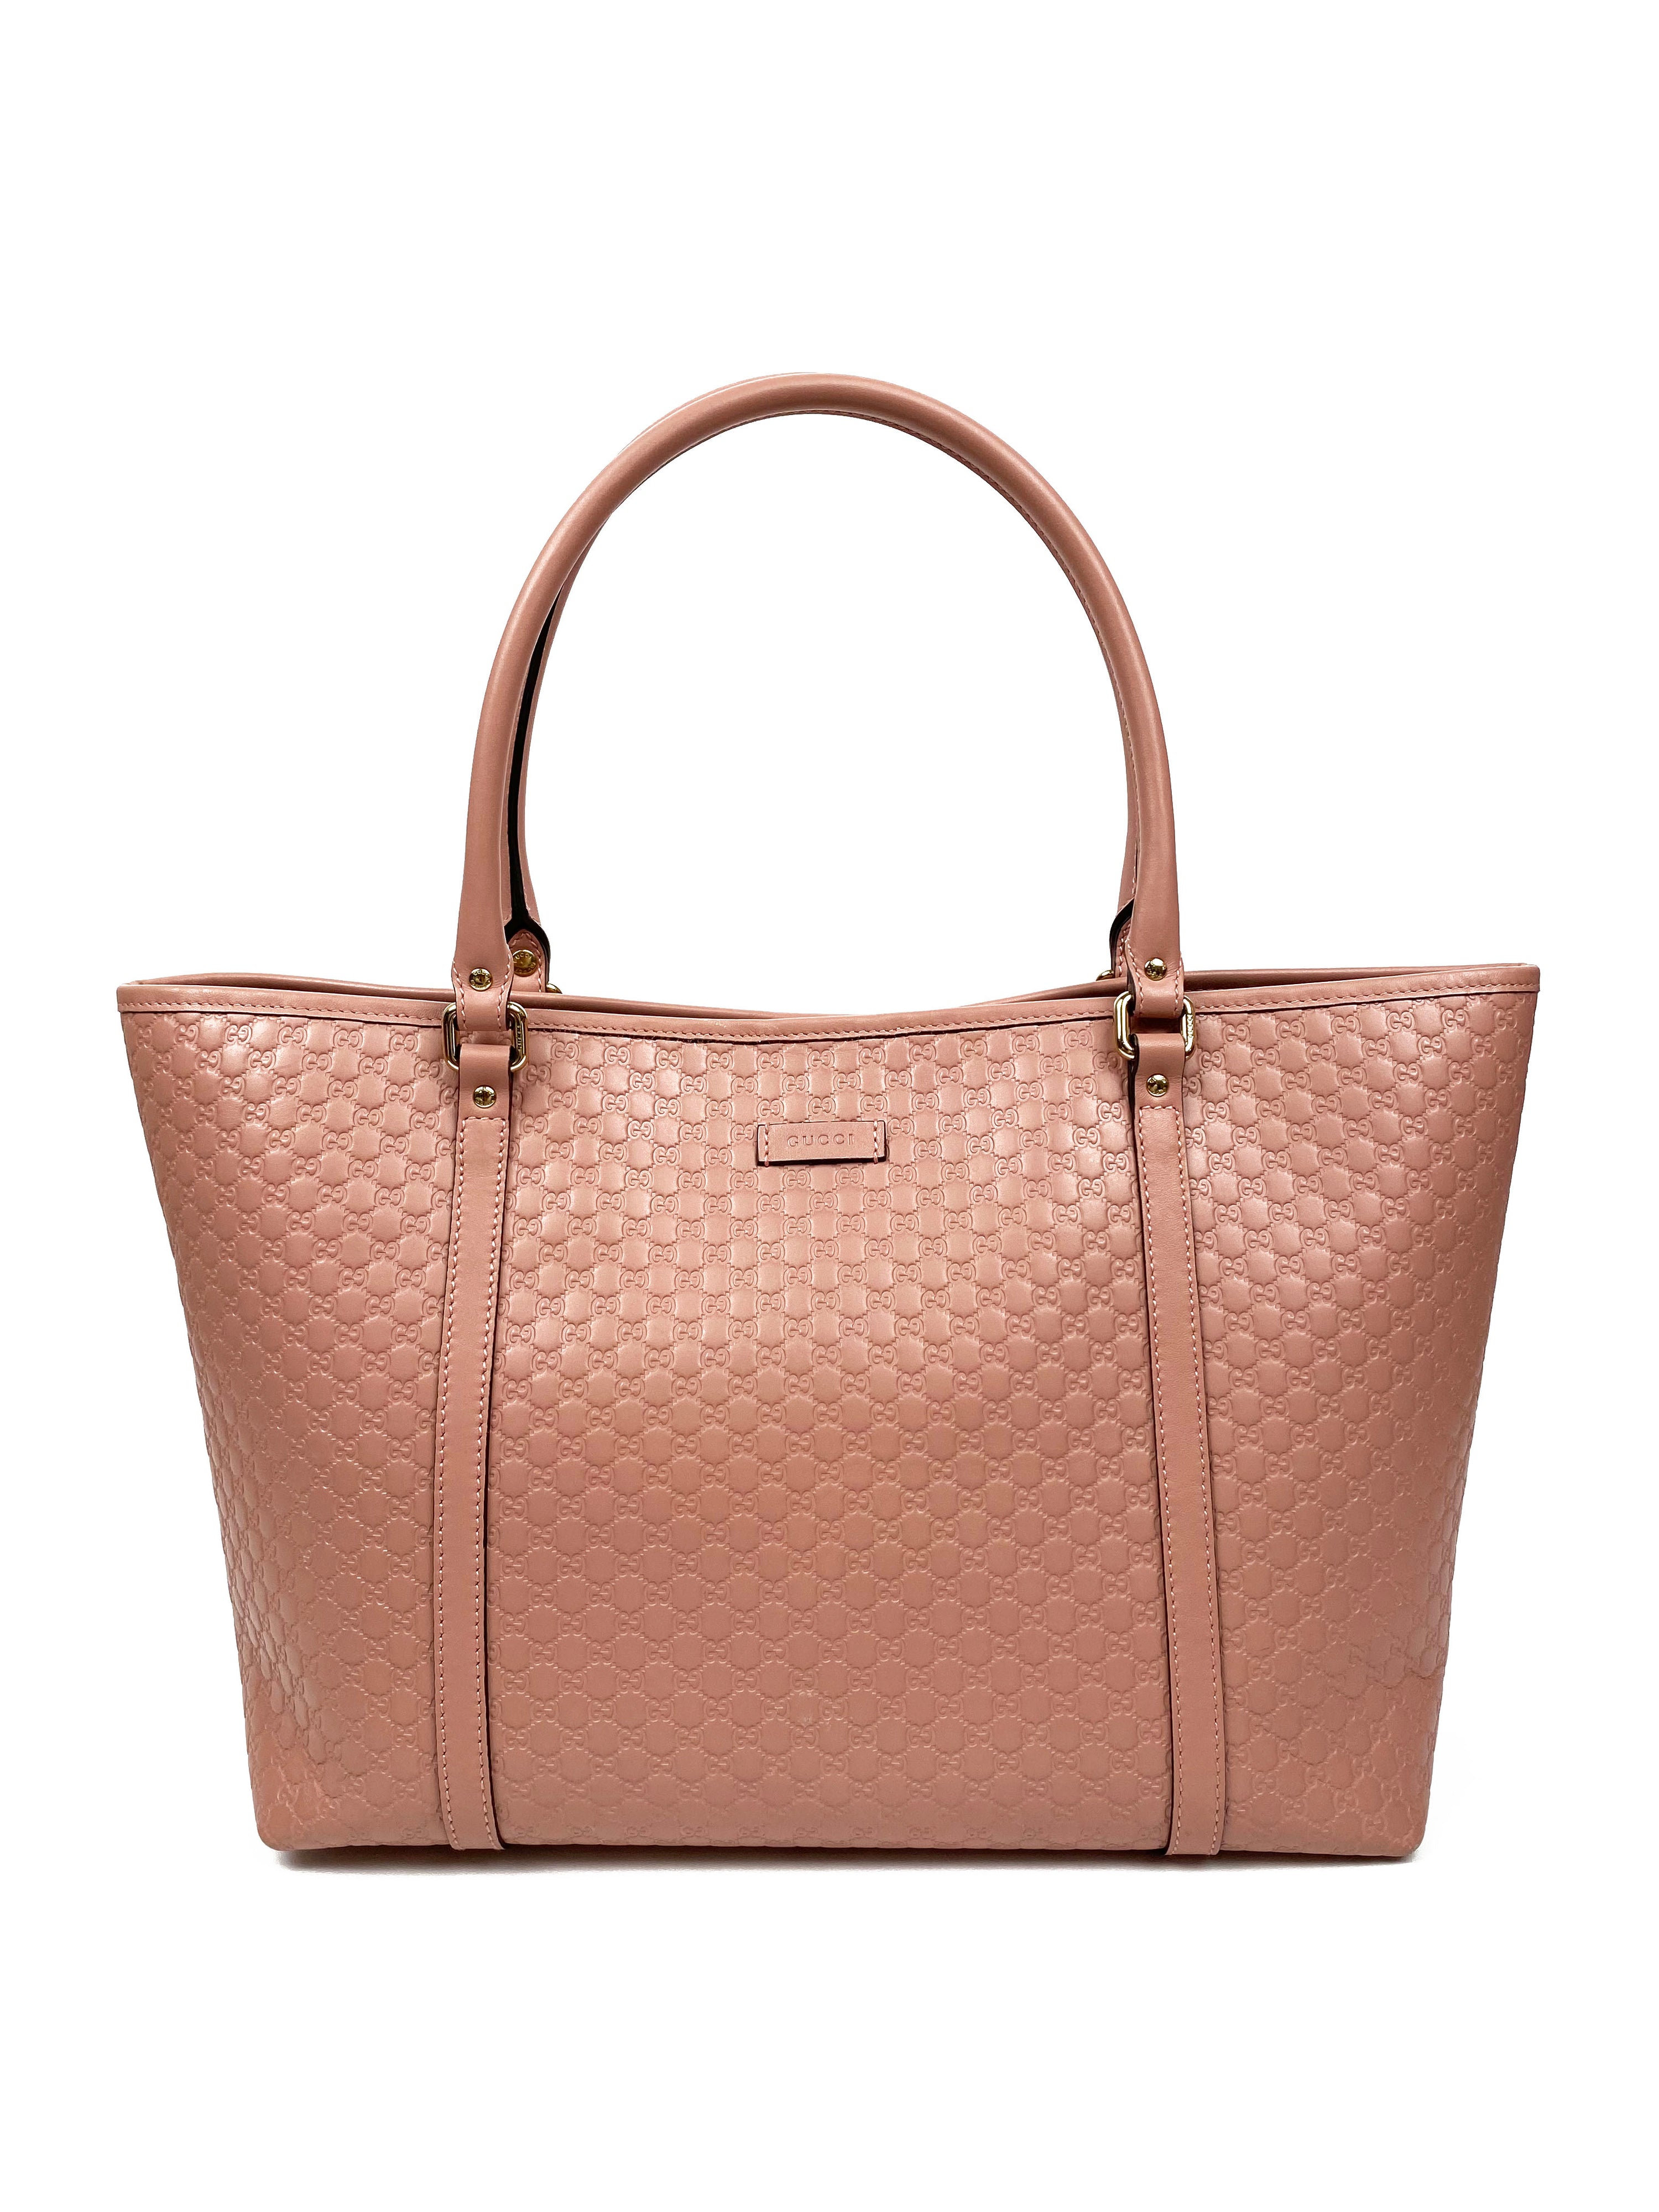 Gucci Pink GG Guccissima Tote Bag